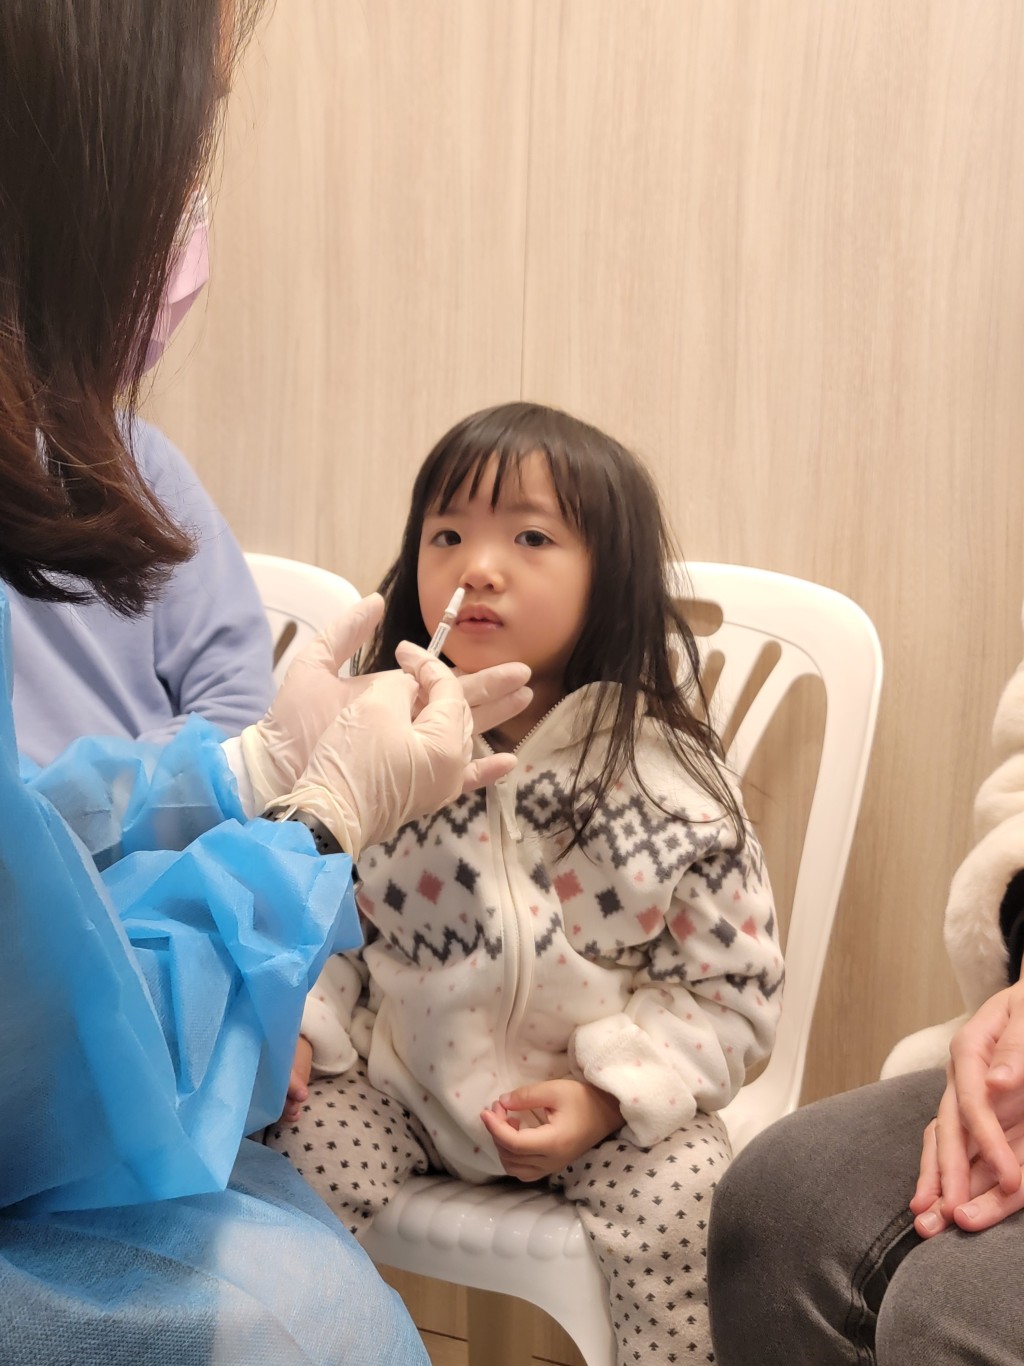 三歲的暖暖示範接種噴鼻式流感疫苗。